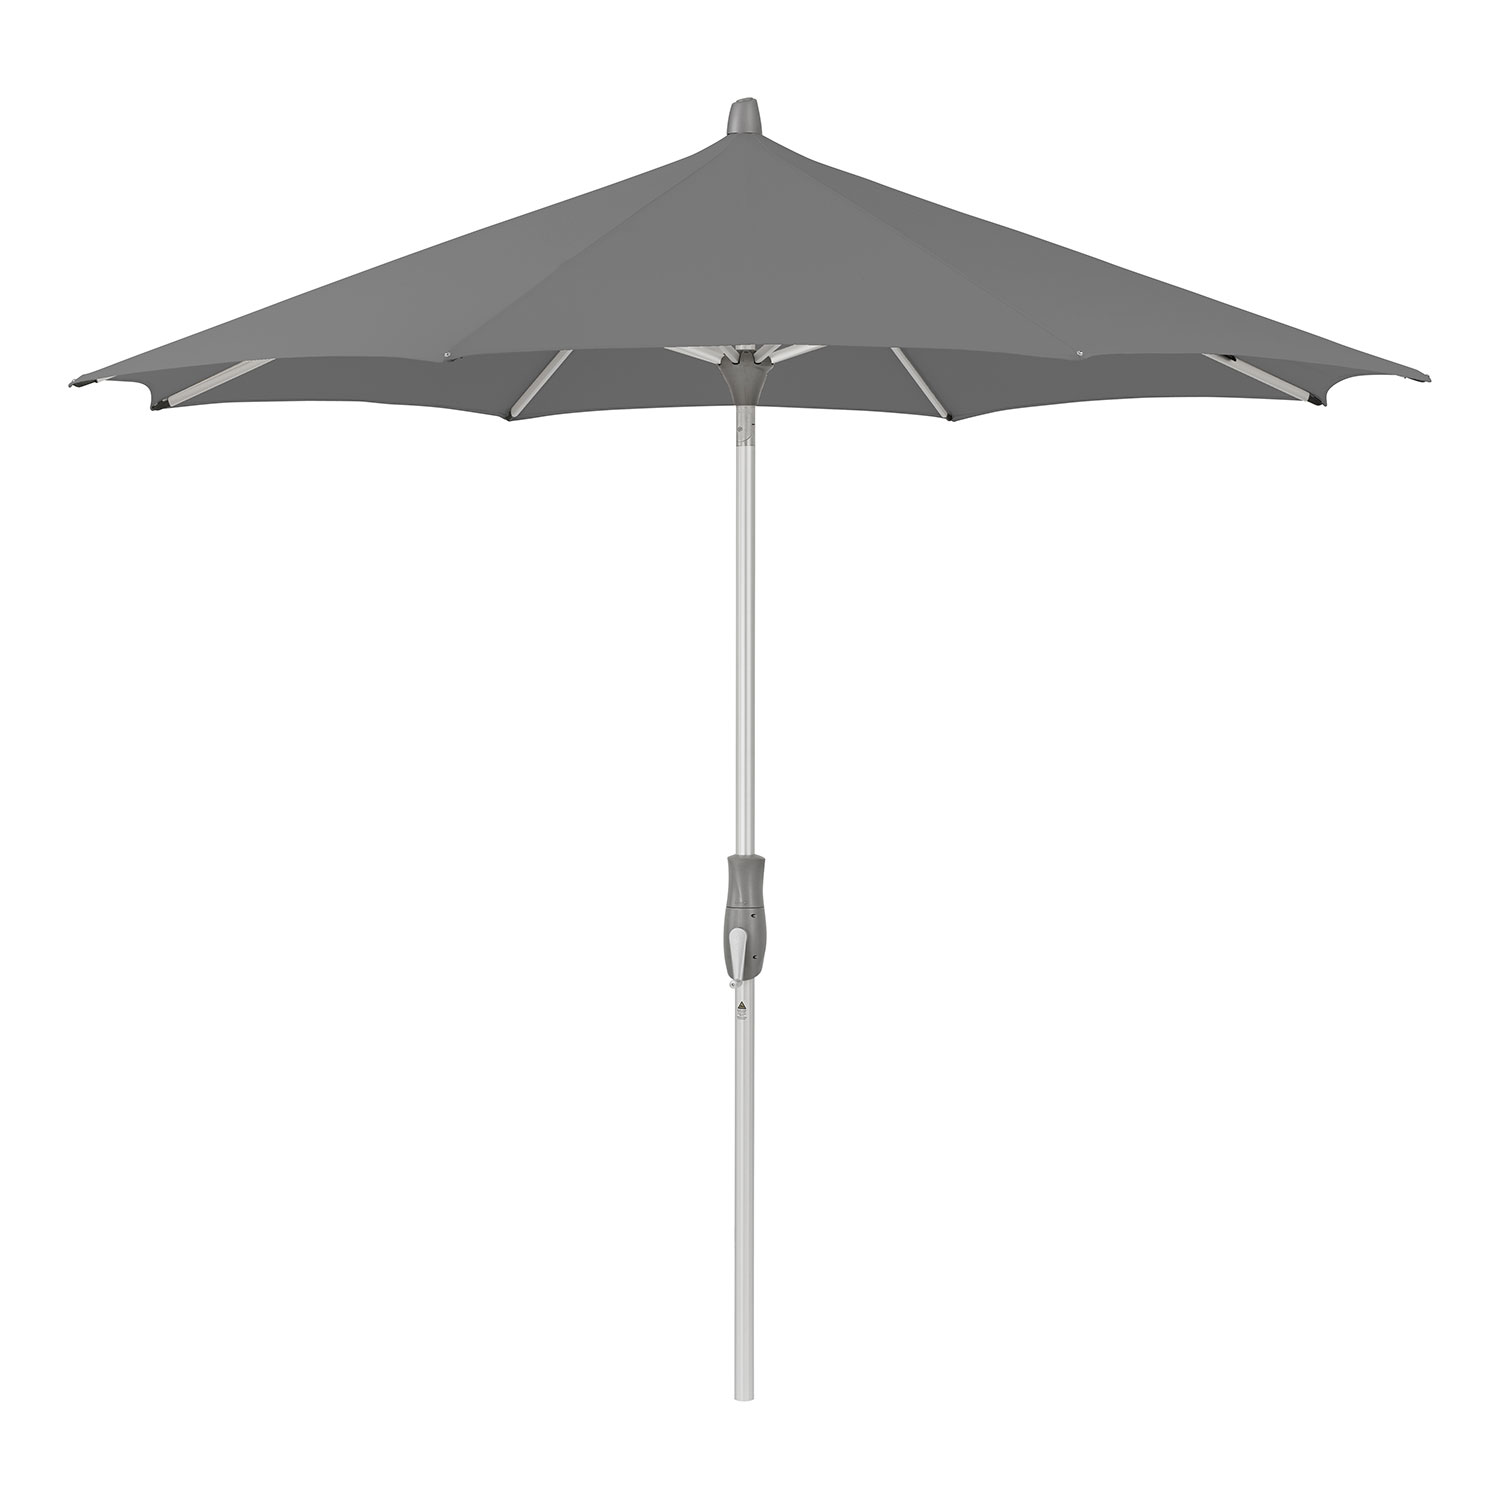 Alu-twist parasoll 330 cm kat.5 684 urban shadow Glatz